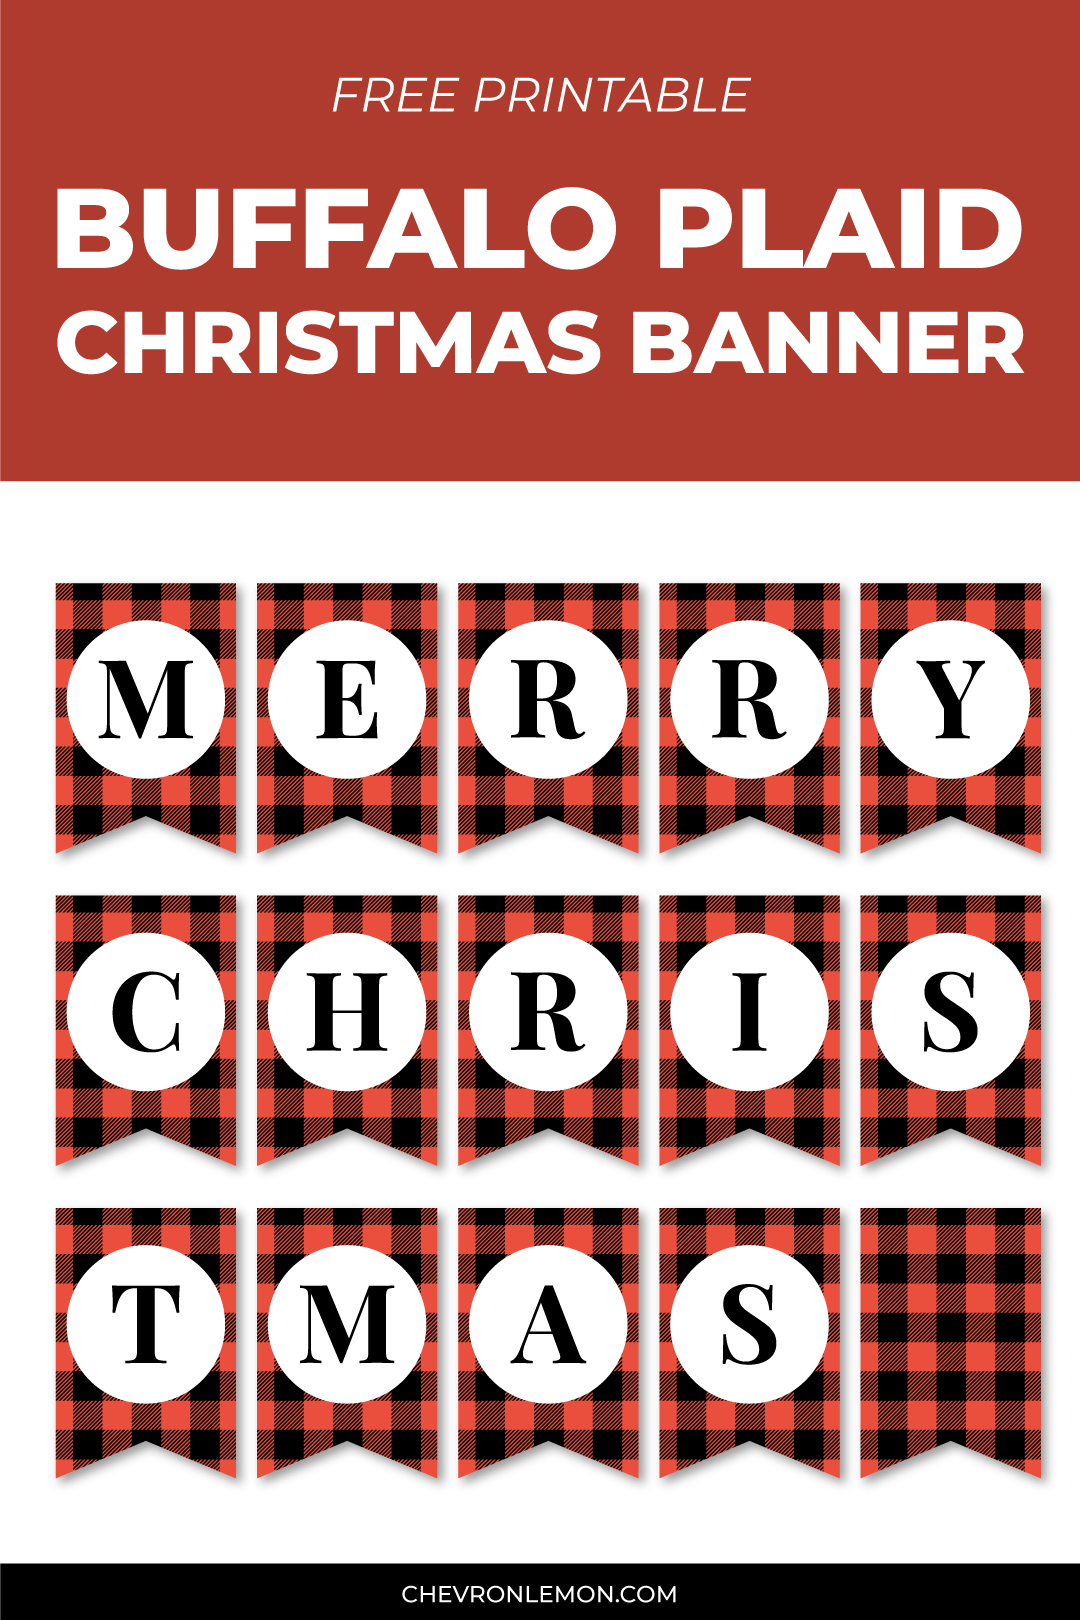 Buffalo plaid Christmas banner